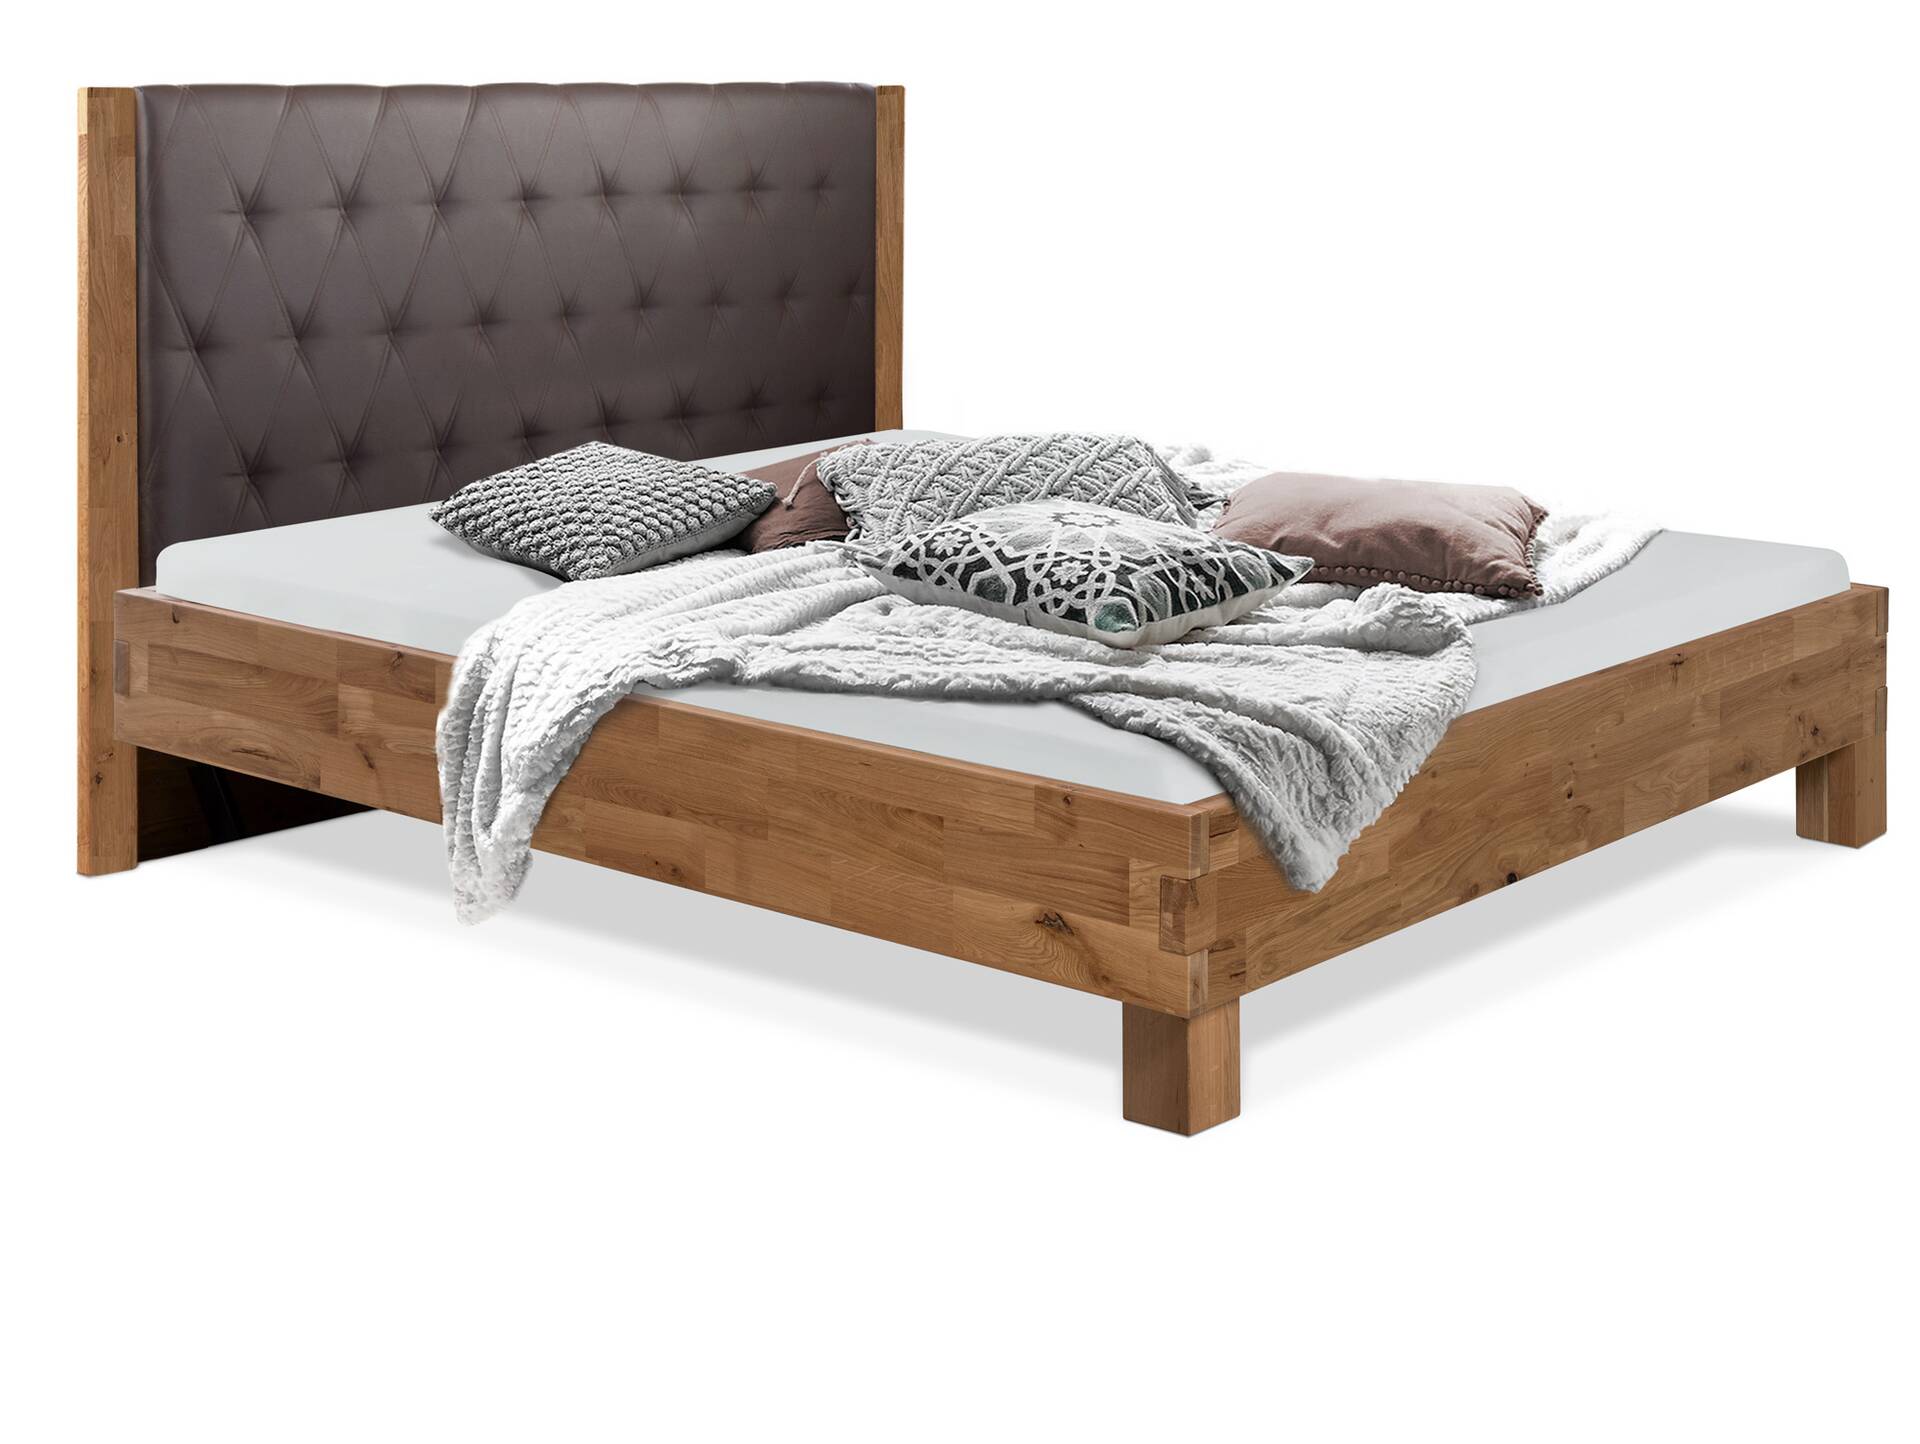 CORDINO 4-Fuß-Bett aus Eiche mit gestepptem Polster-Kopfteil, Material Massivholz 160 x 200 cm | Eiche unbehandelt | Kunstleder Braun | gebürstet